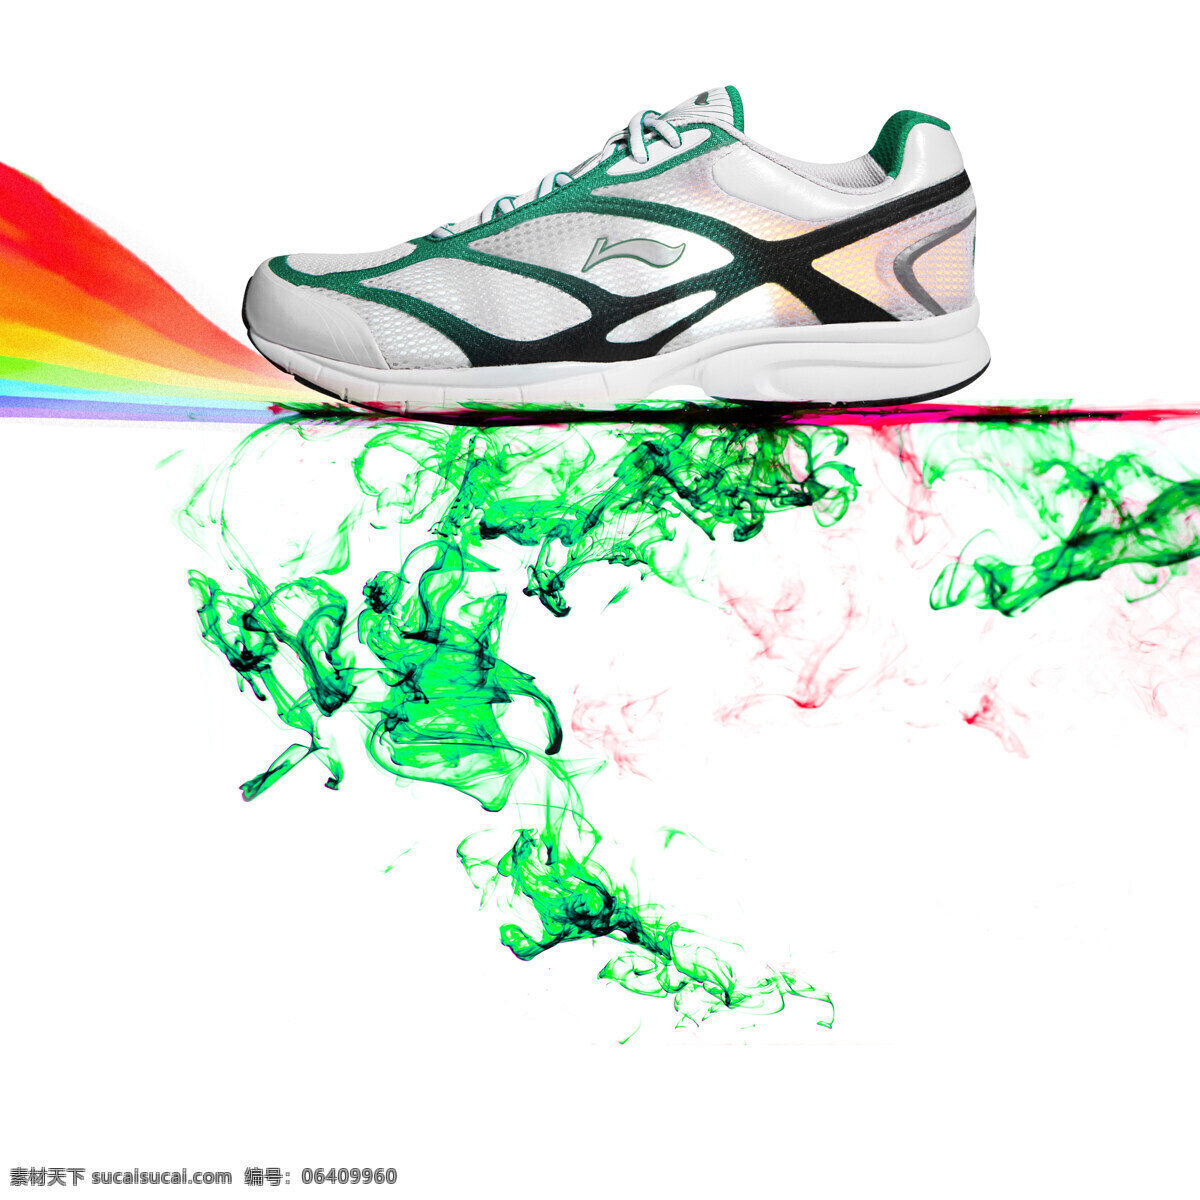 跑步鞋 运动鞋 超轻系列 中国风 第七代 7代 凌波 彩虹 水 滴墨 色彩 体育用品 生活百科